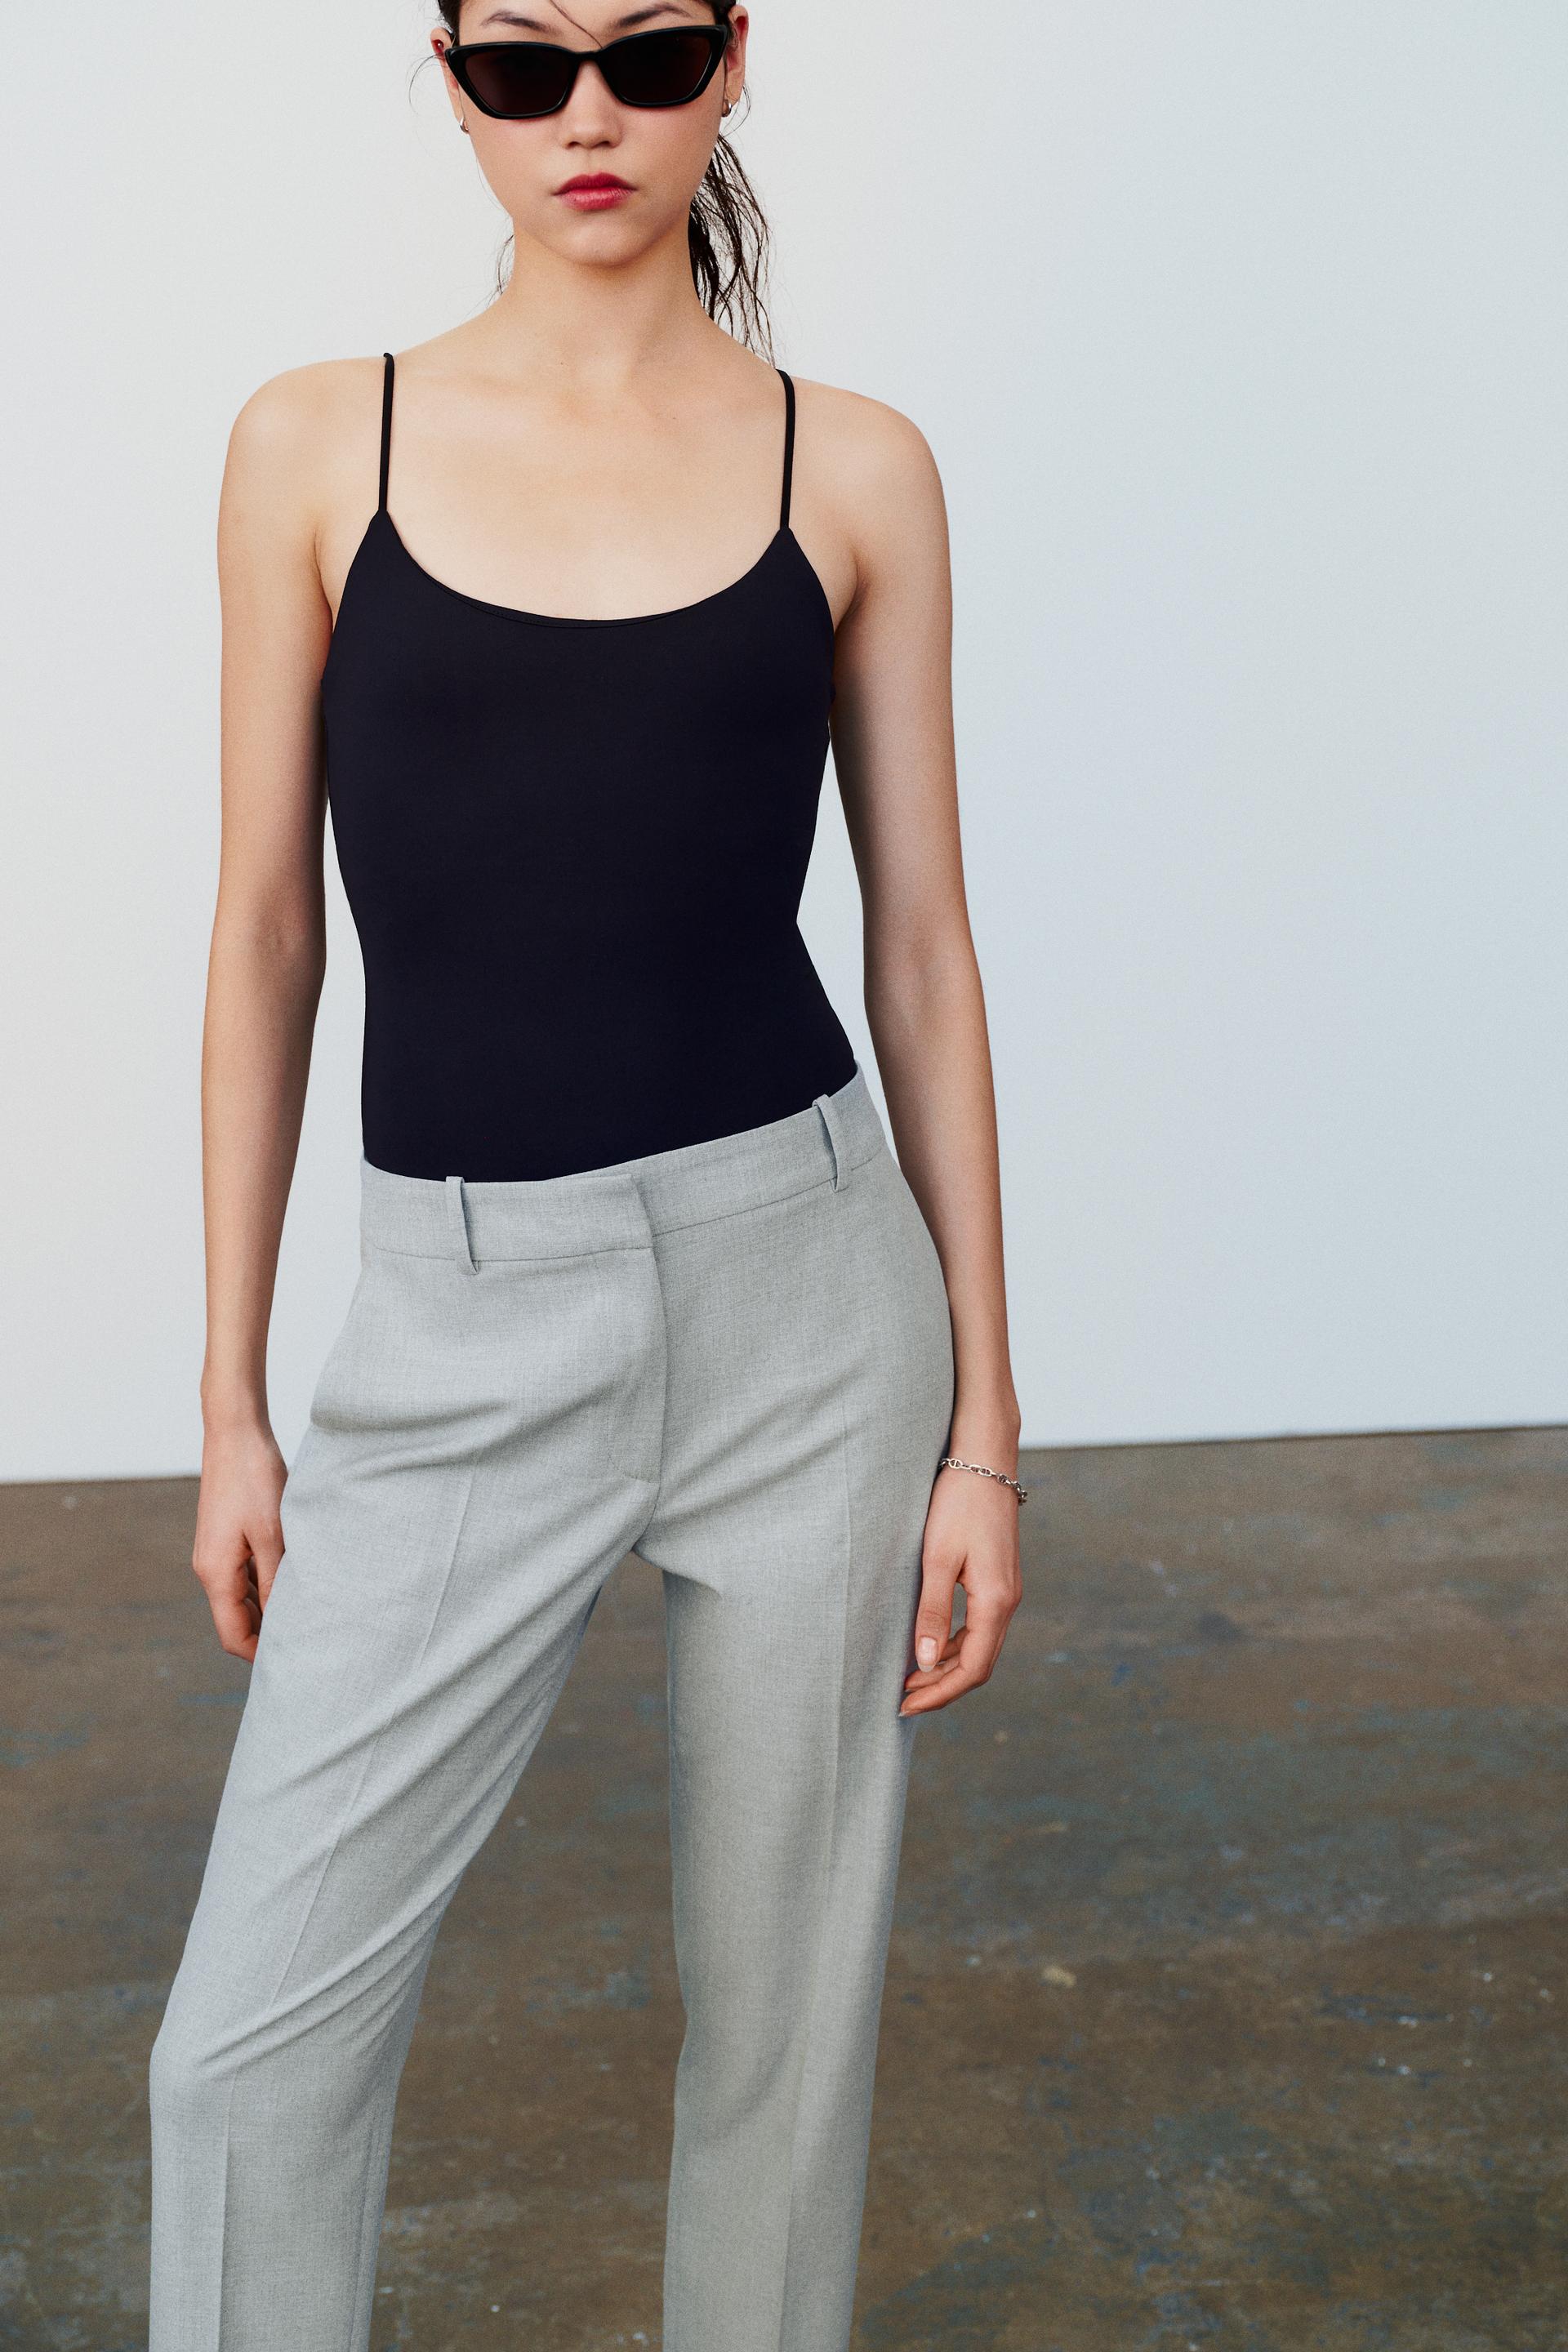 Zara, Tops, Zara Neoprene Effect Cut Out Bodysuit Size Small